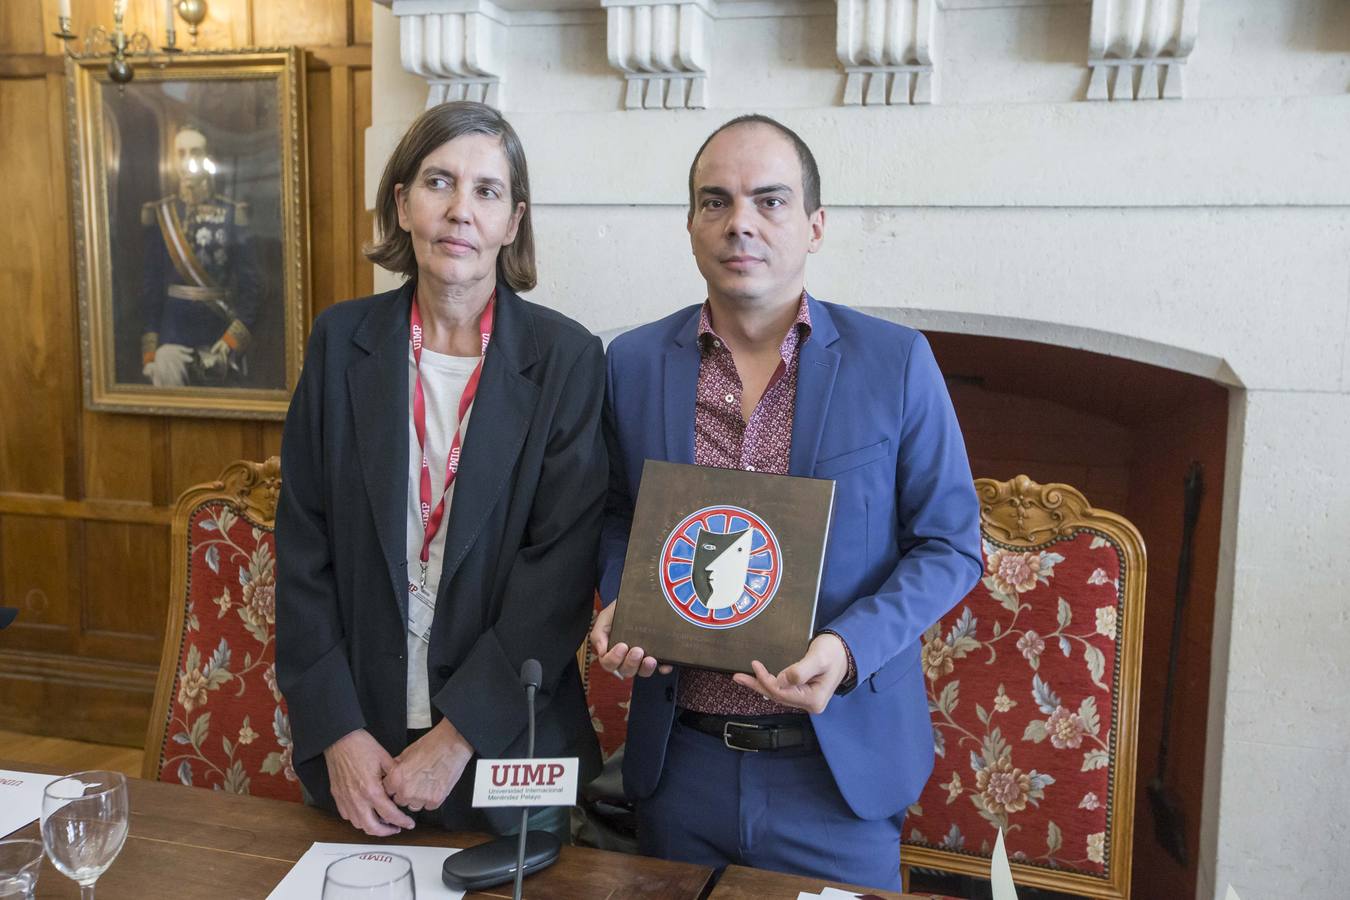 La Universidad Internacional Menéndez Pelayo ha entregado el XII Premio a las artes escénicas' al dramaturgo, quien ha dedicado el galardón recibido a los intérpretes. El acto ha tenido lugar en el Palacio de La Magdalena